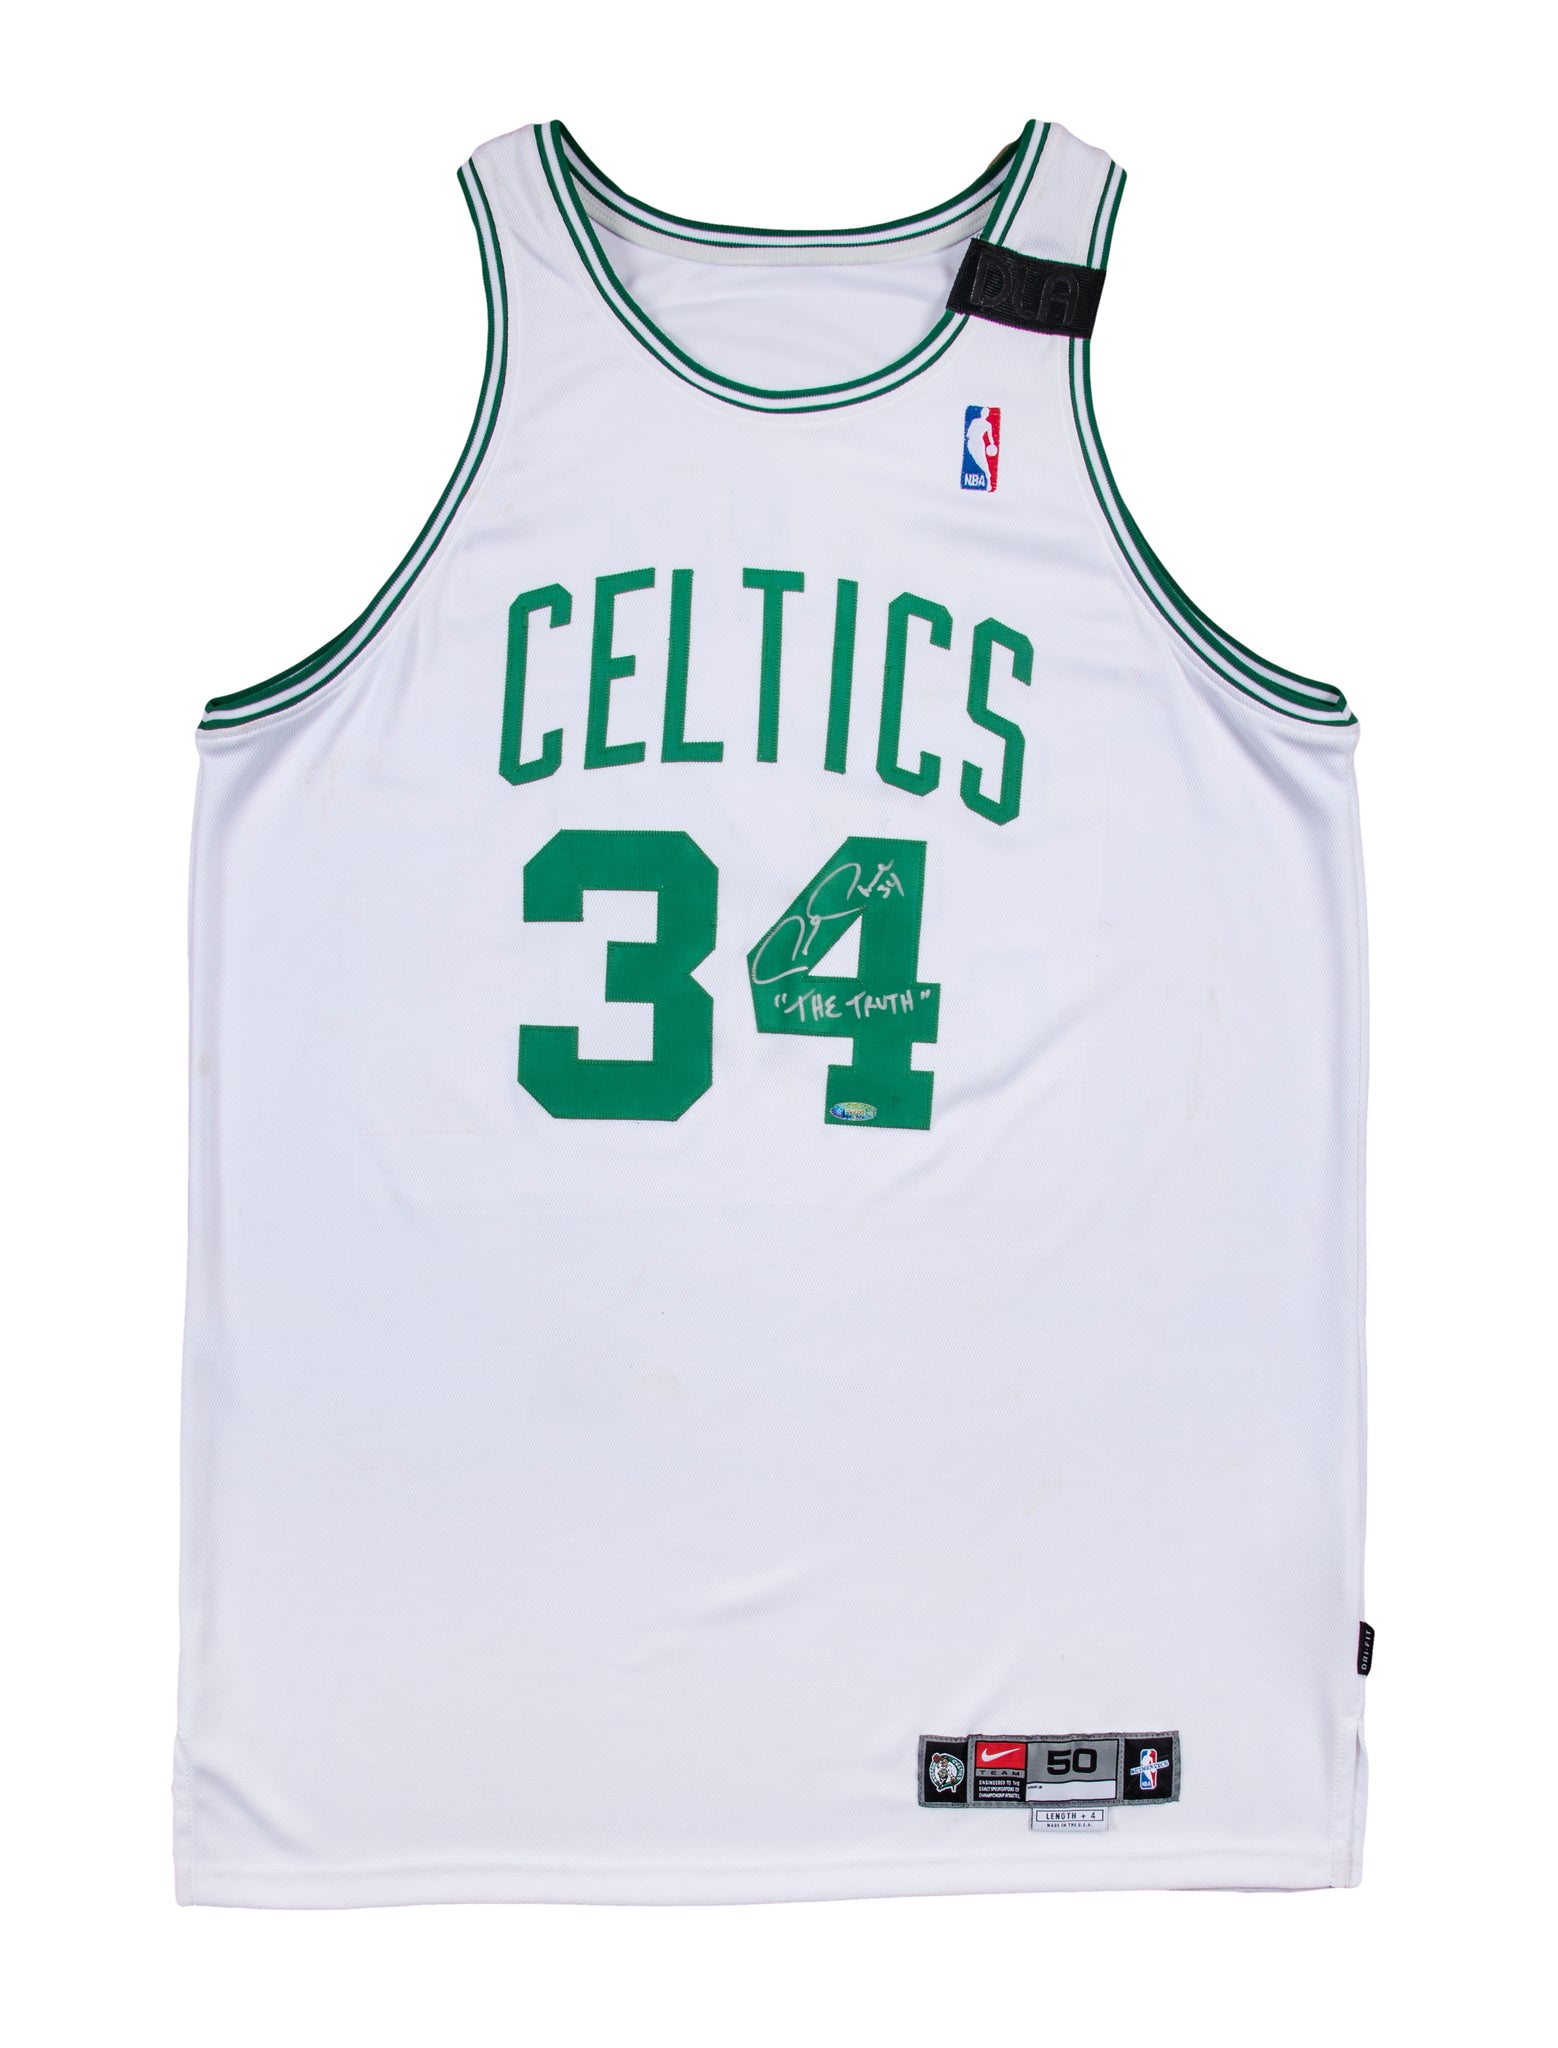 Boston Celtics Game Used NBA Memorabilia for sale